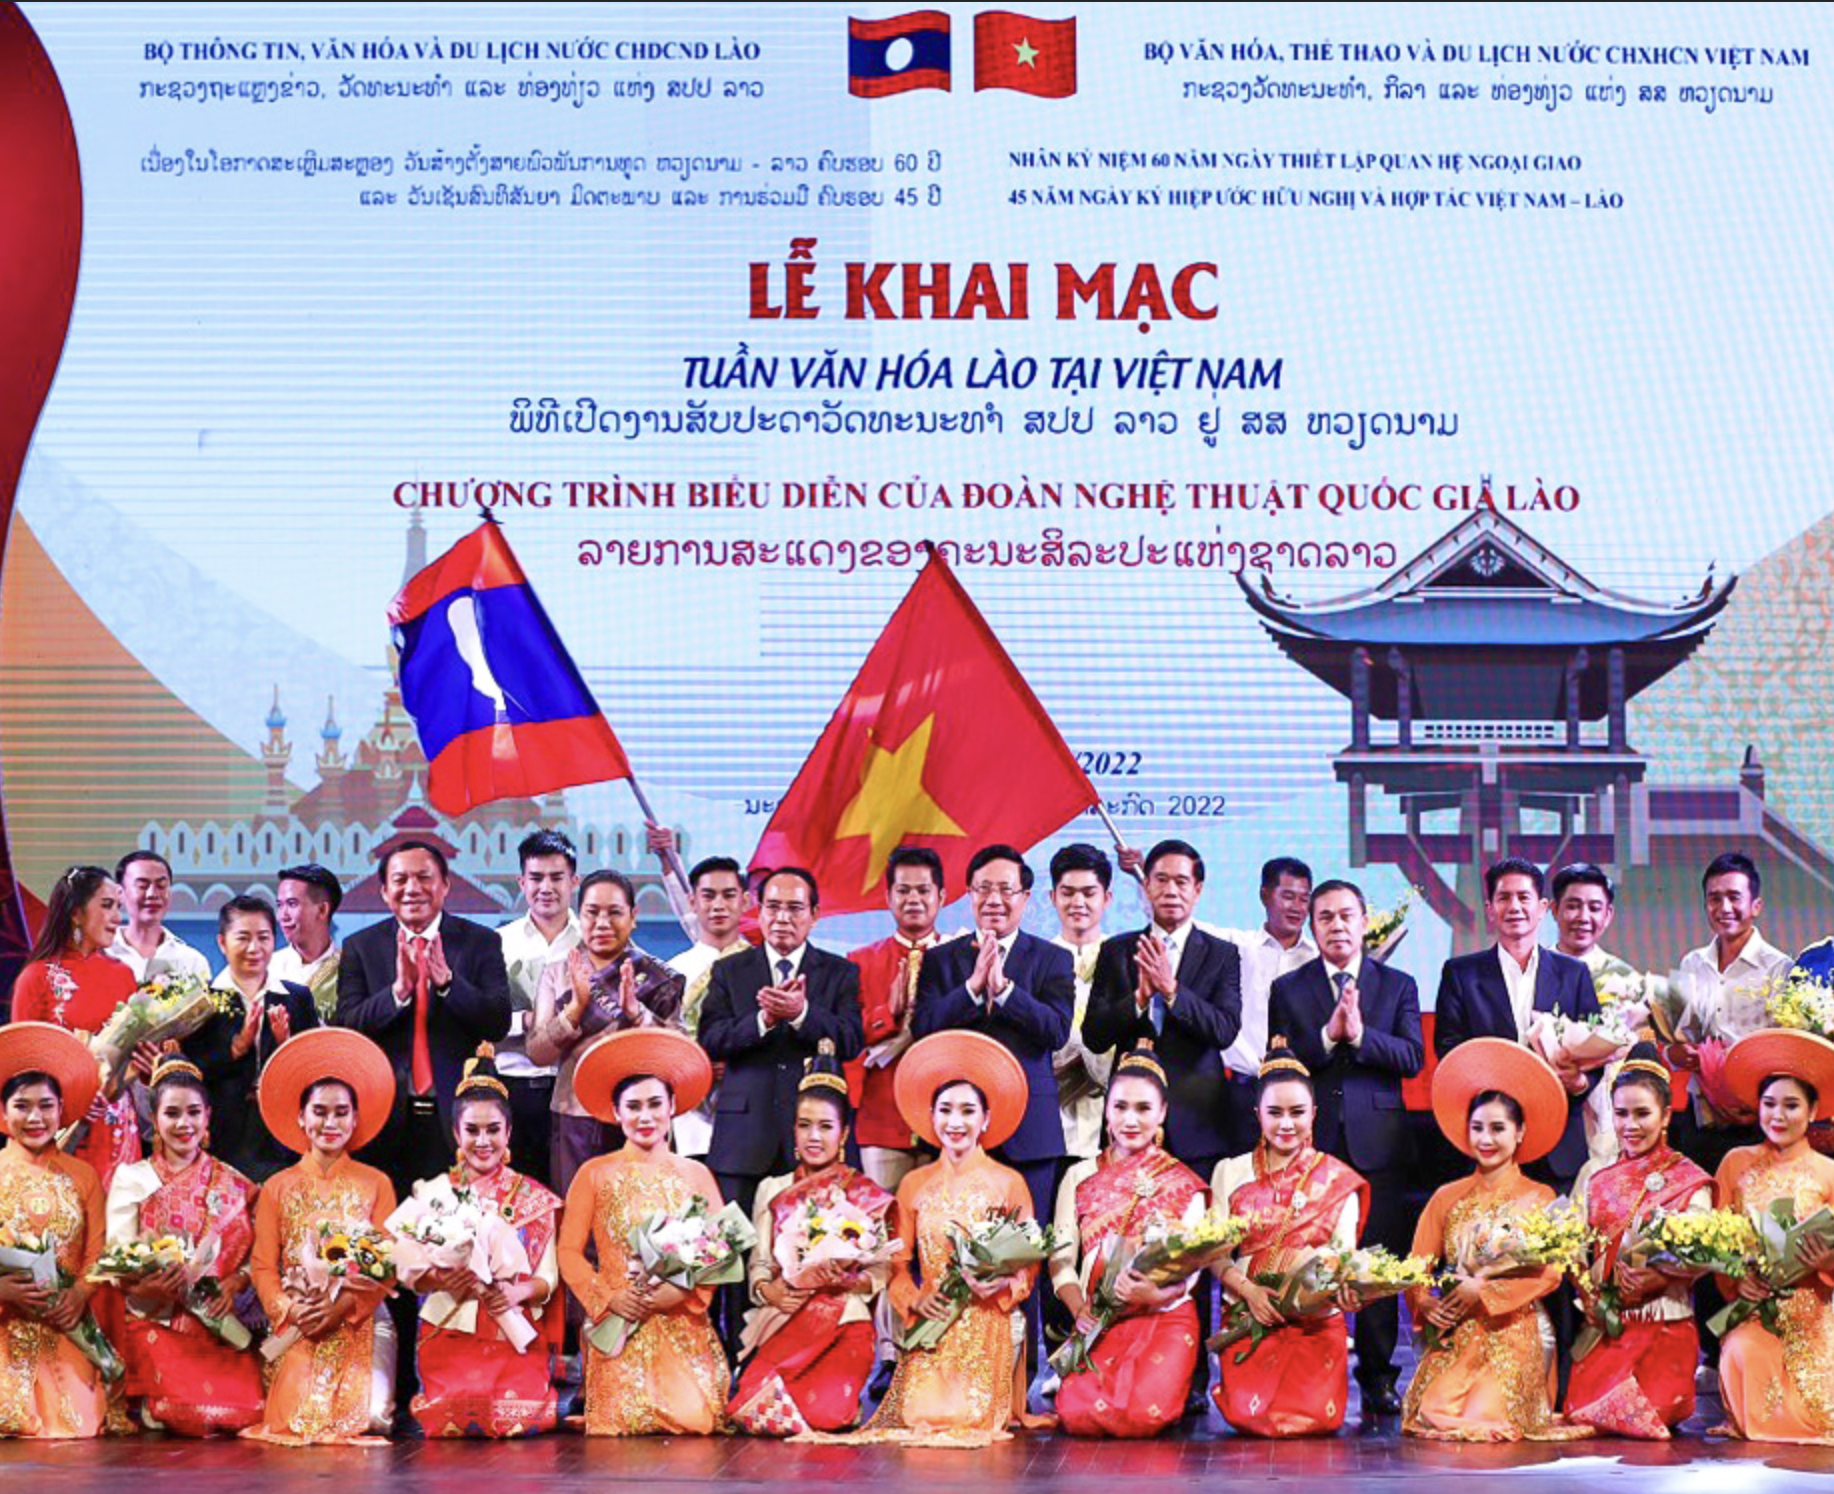 Tưng bừng khai mạc Tuần lễ Văn hóa Lào tại Việt Nam ghi dấu ấn kỷ niệm 60 năm Ngày thiết lập quan hệ ngoại giao Việt Nam - Lào  và 45 năm Ngày ký Hiệp ước Hữu nghị và Hợp tác giữa hai nước.